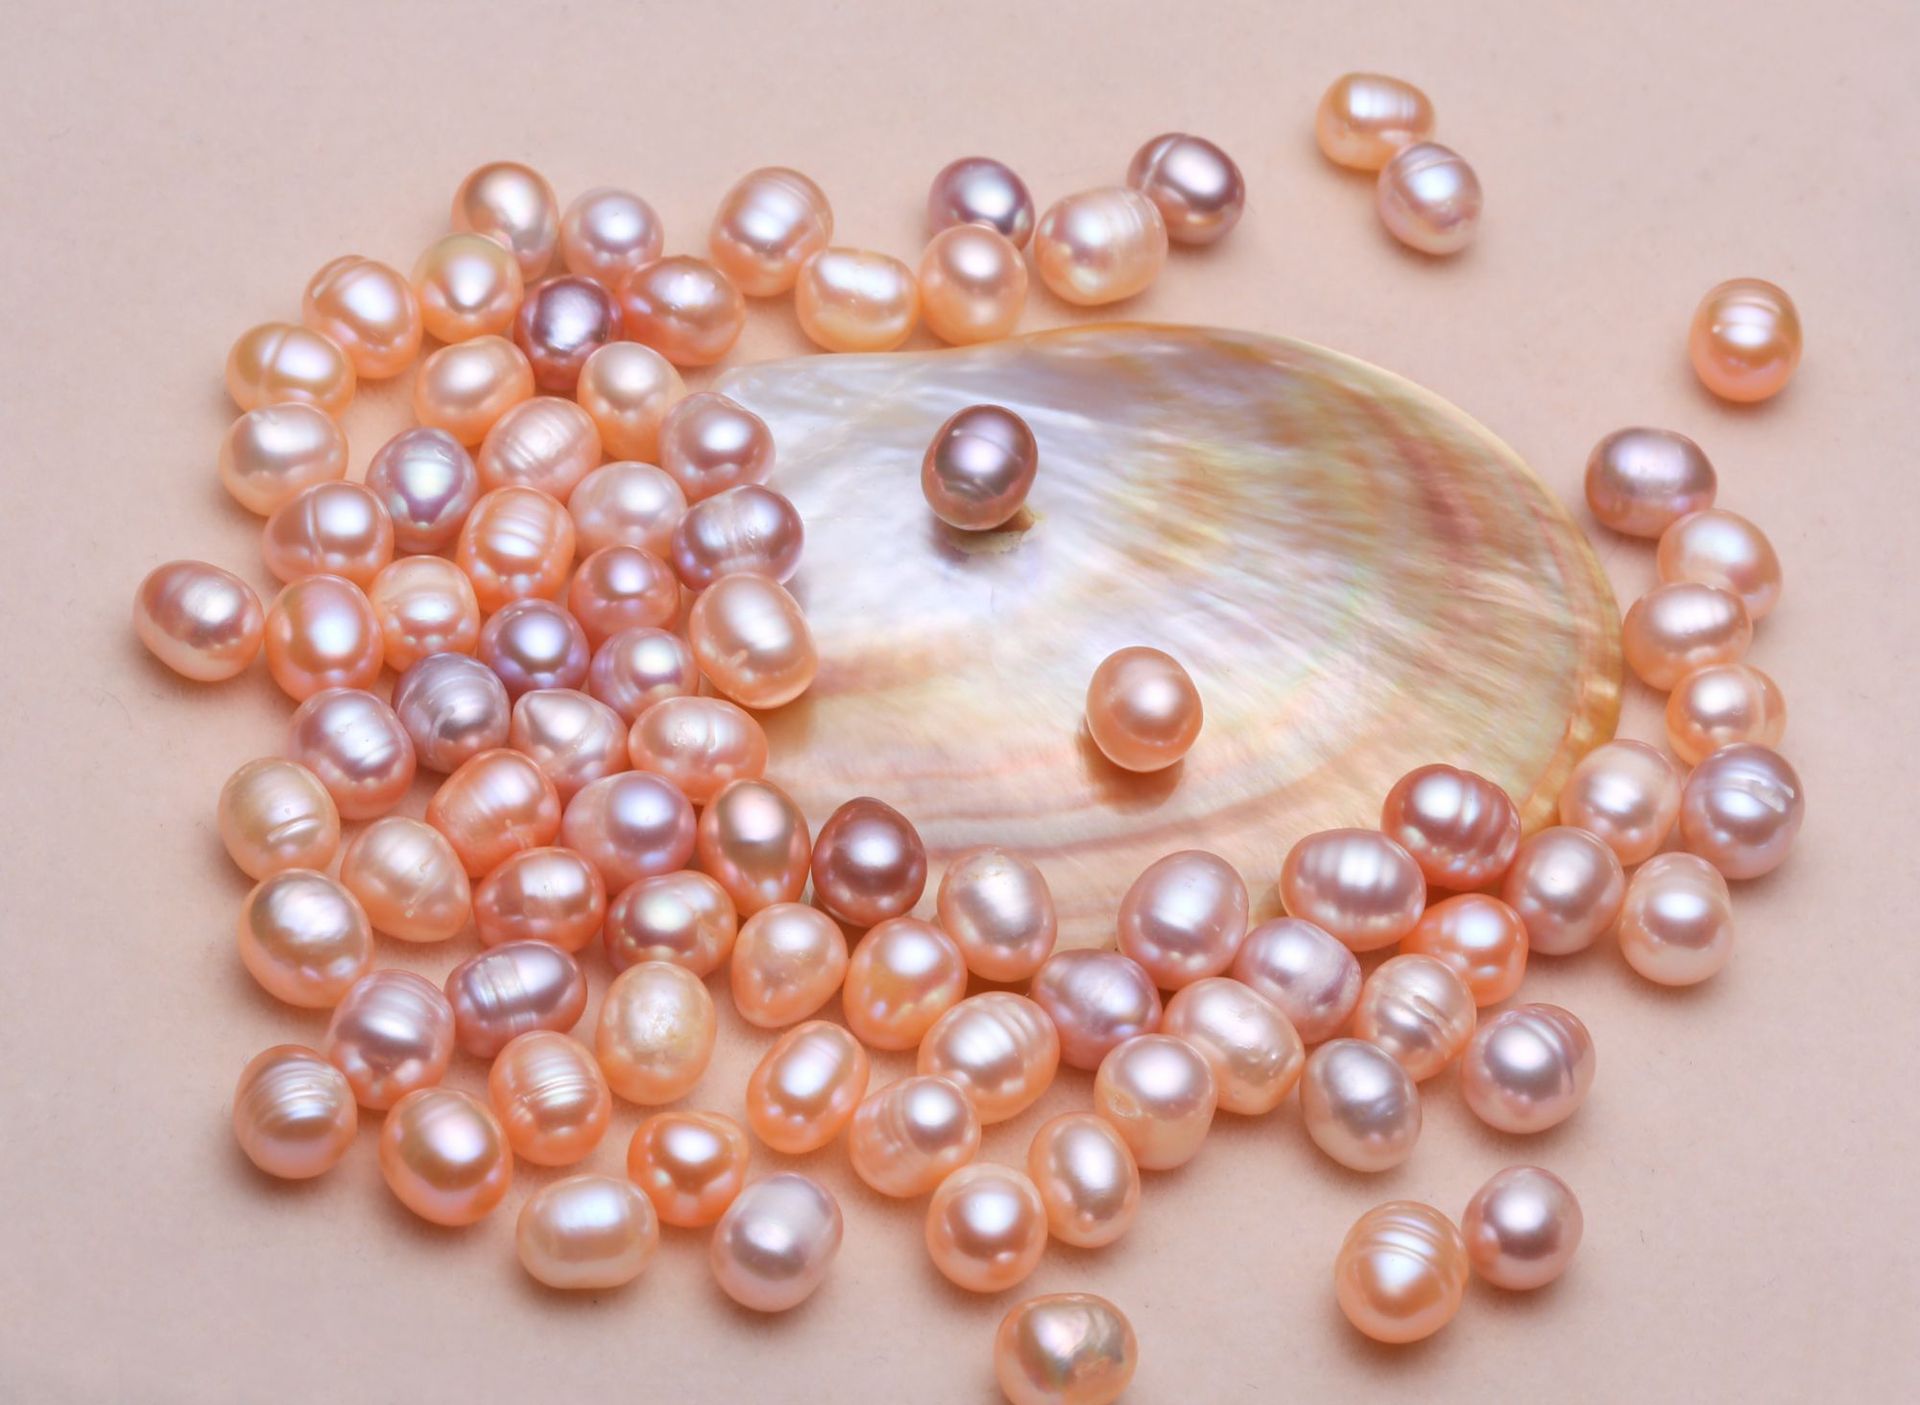 5A级颗粒珍珠裸珠 淡水珍珠批发 2-12mm散珠天然色-阿里巴巴